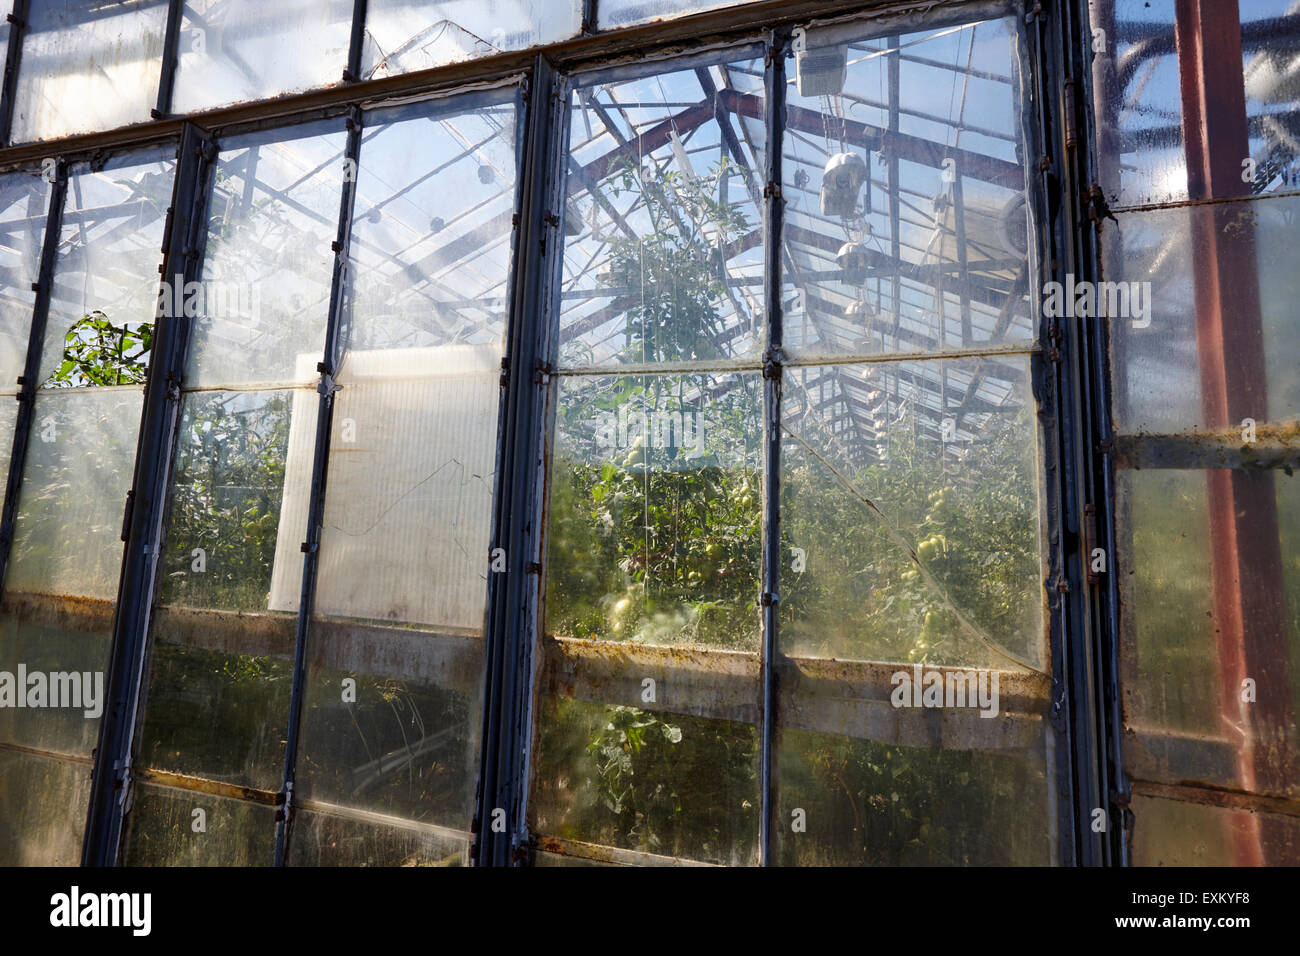 illuminierte Gewächshäuser beheizt durch Erdwärme für den Anbau von Tomaten Hveragerdi Island Stockfoto